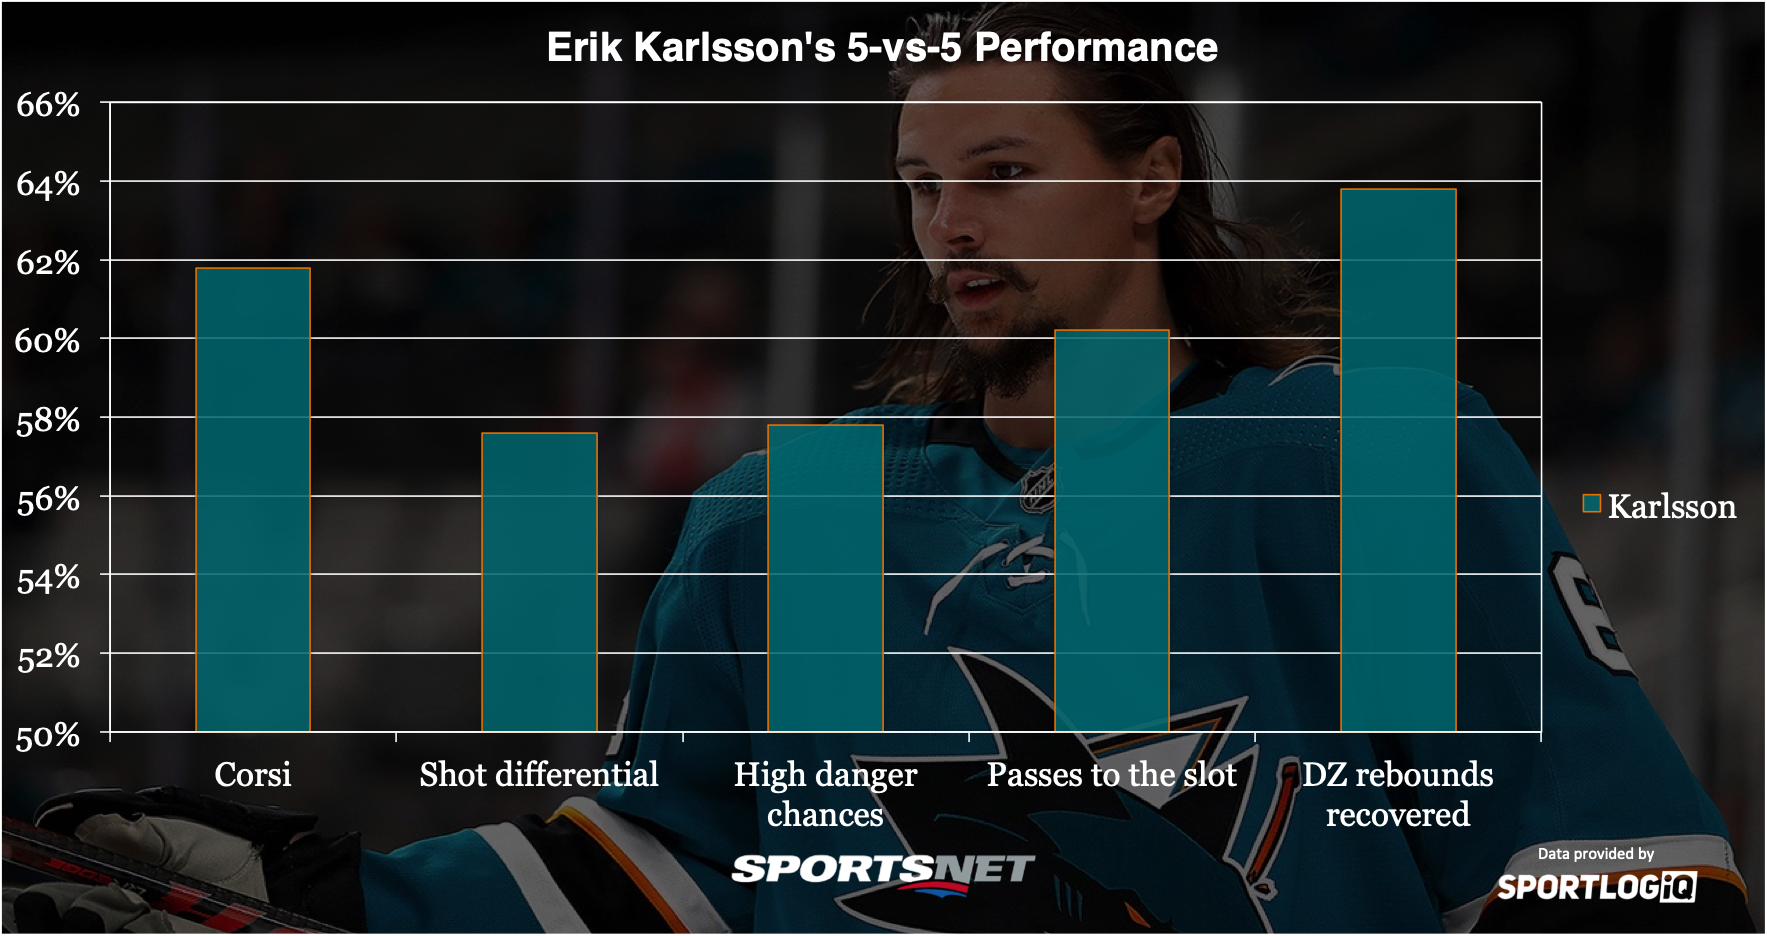 Erik Karlsson tar NHL-fansen med storm – garvar läppen av sig åt